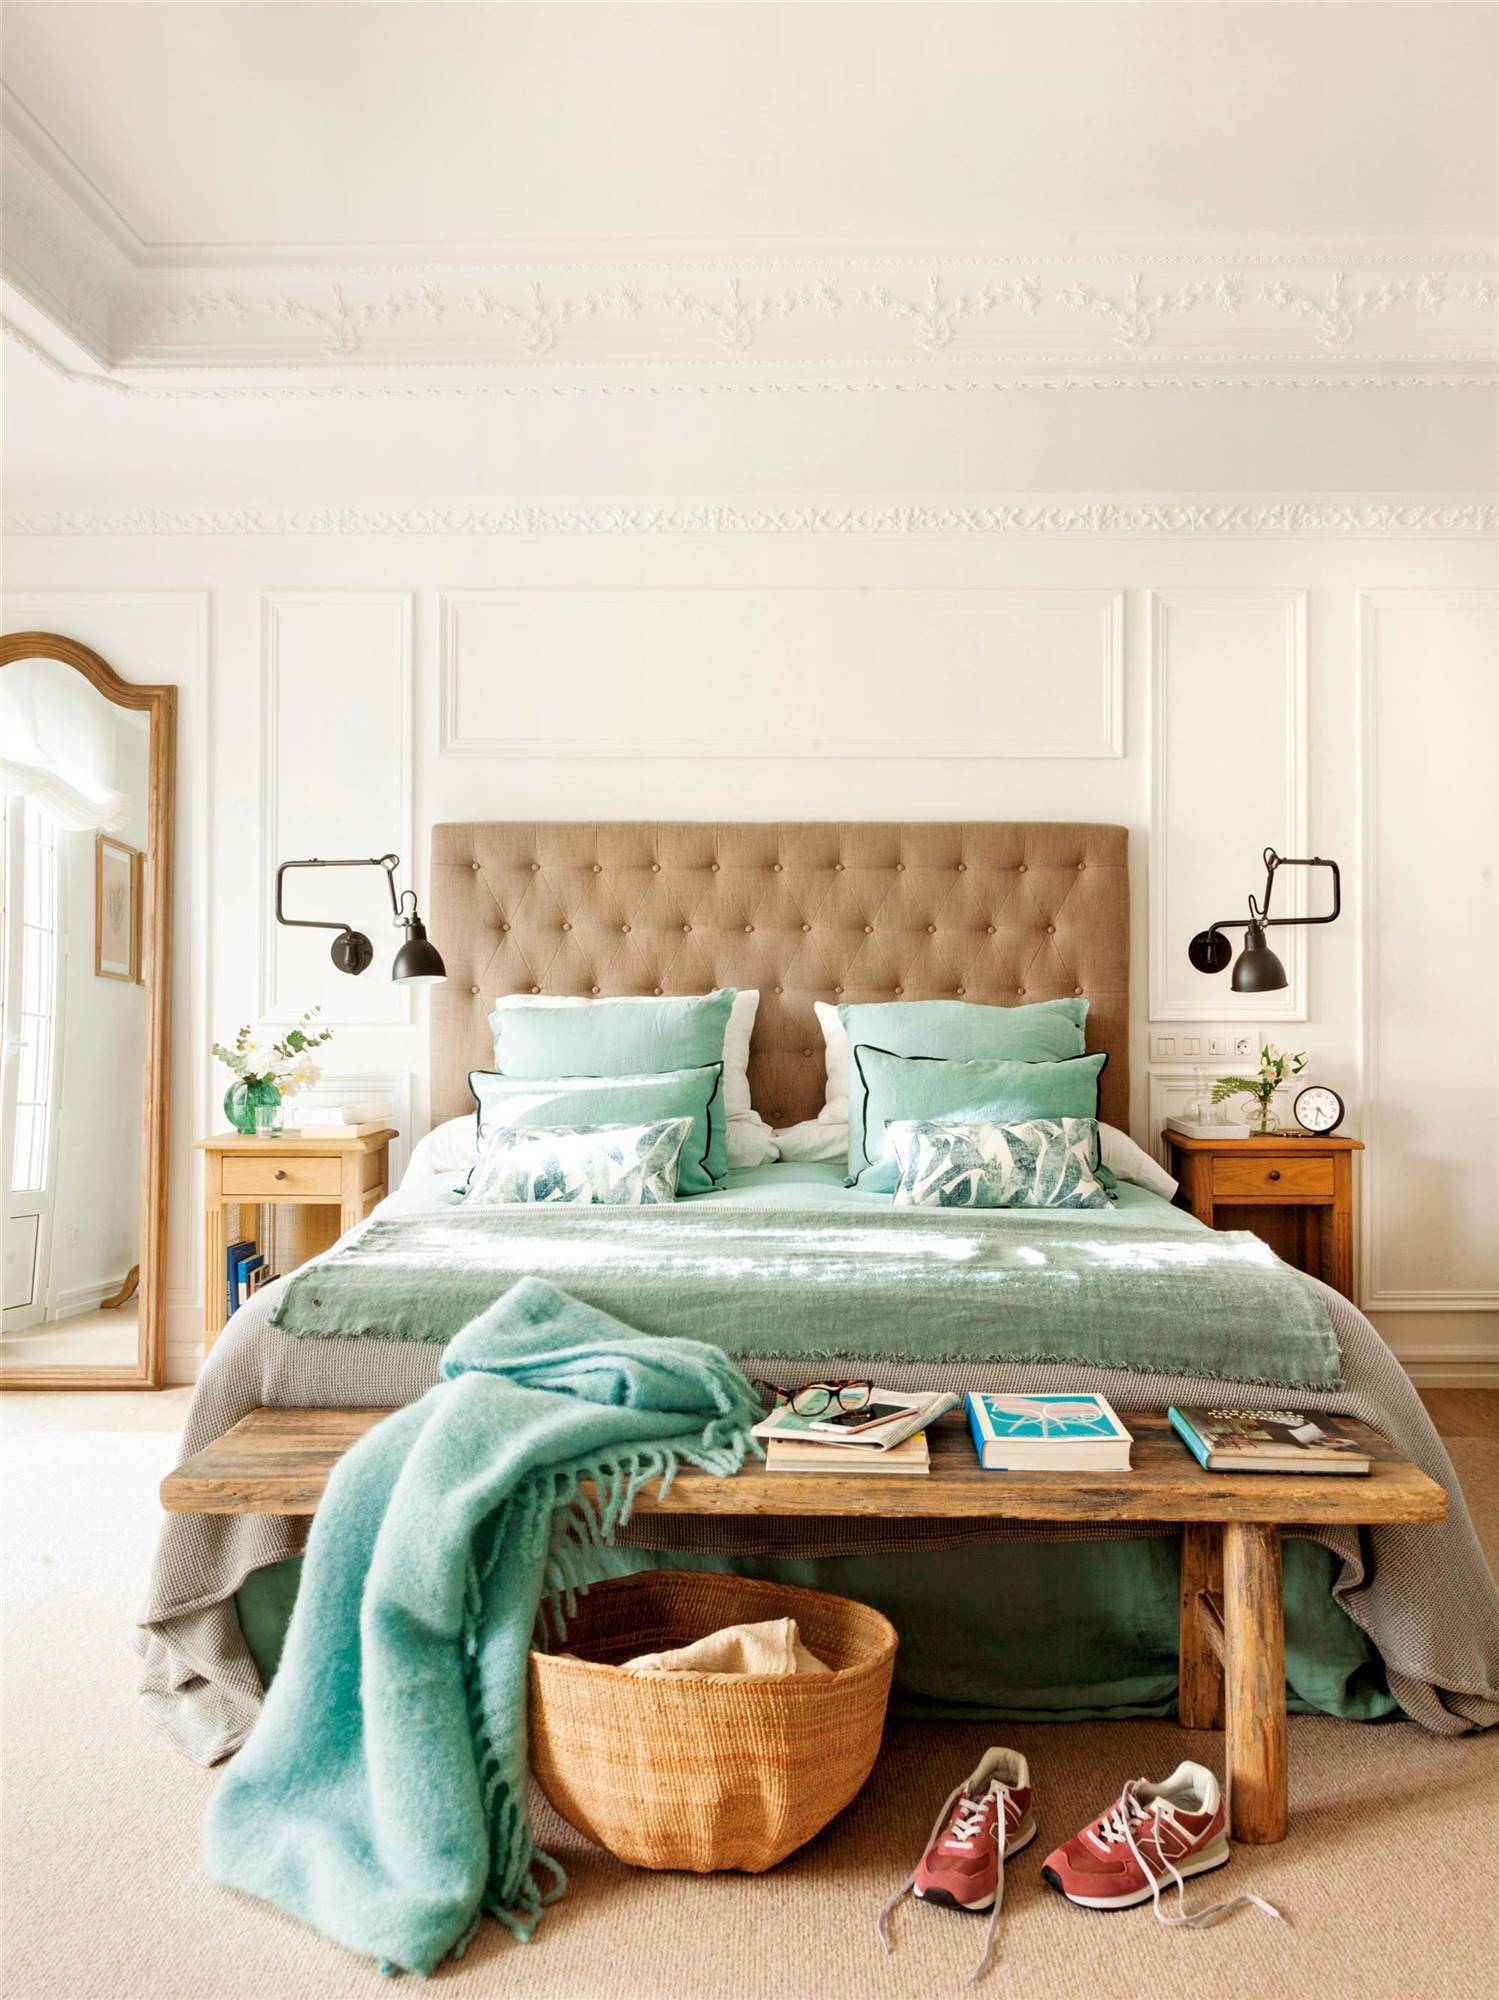 Dormitorio con cabecero de capitoné y molduras en pared.